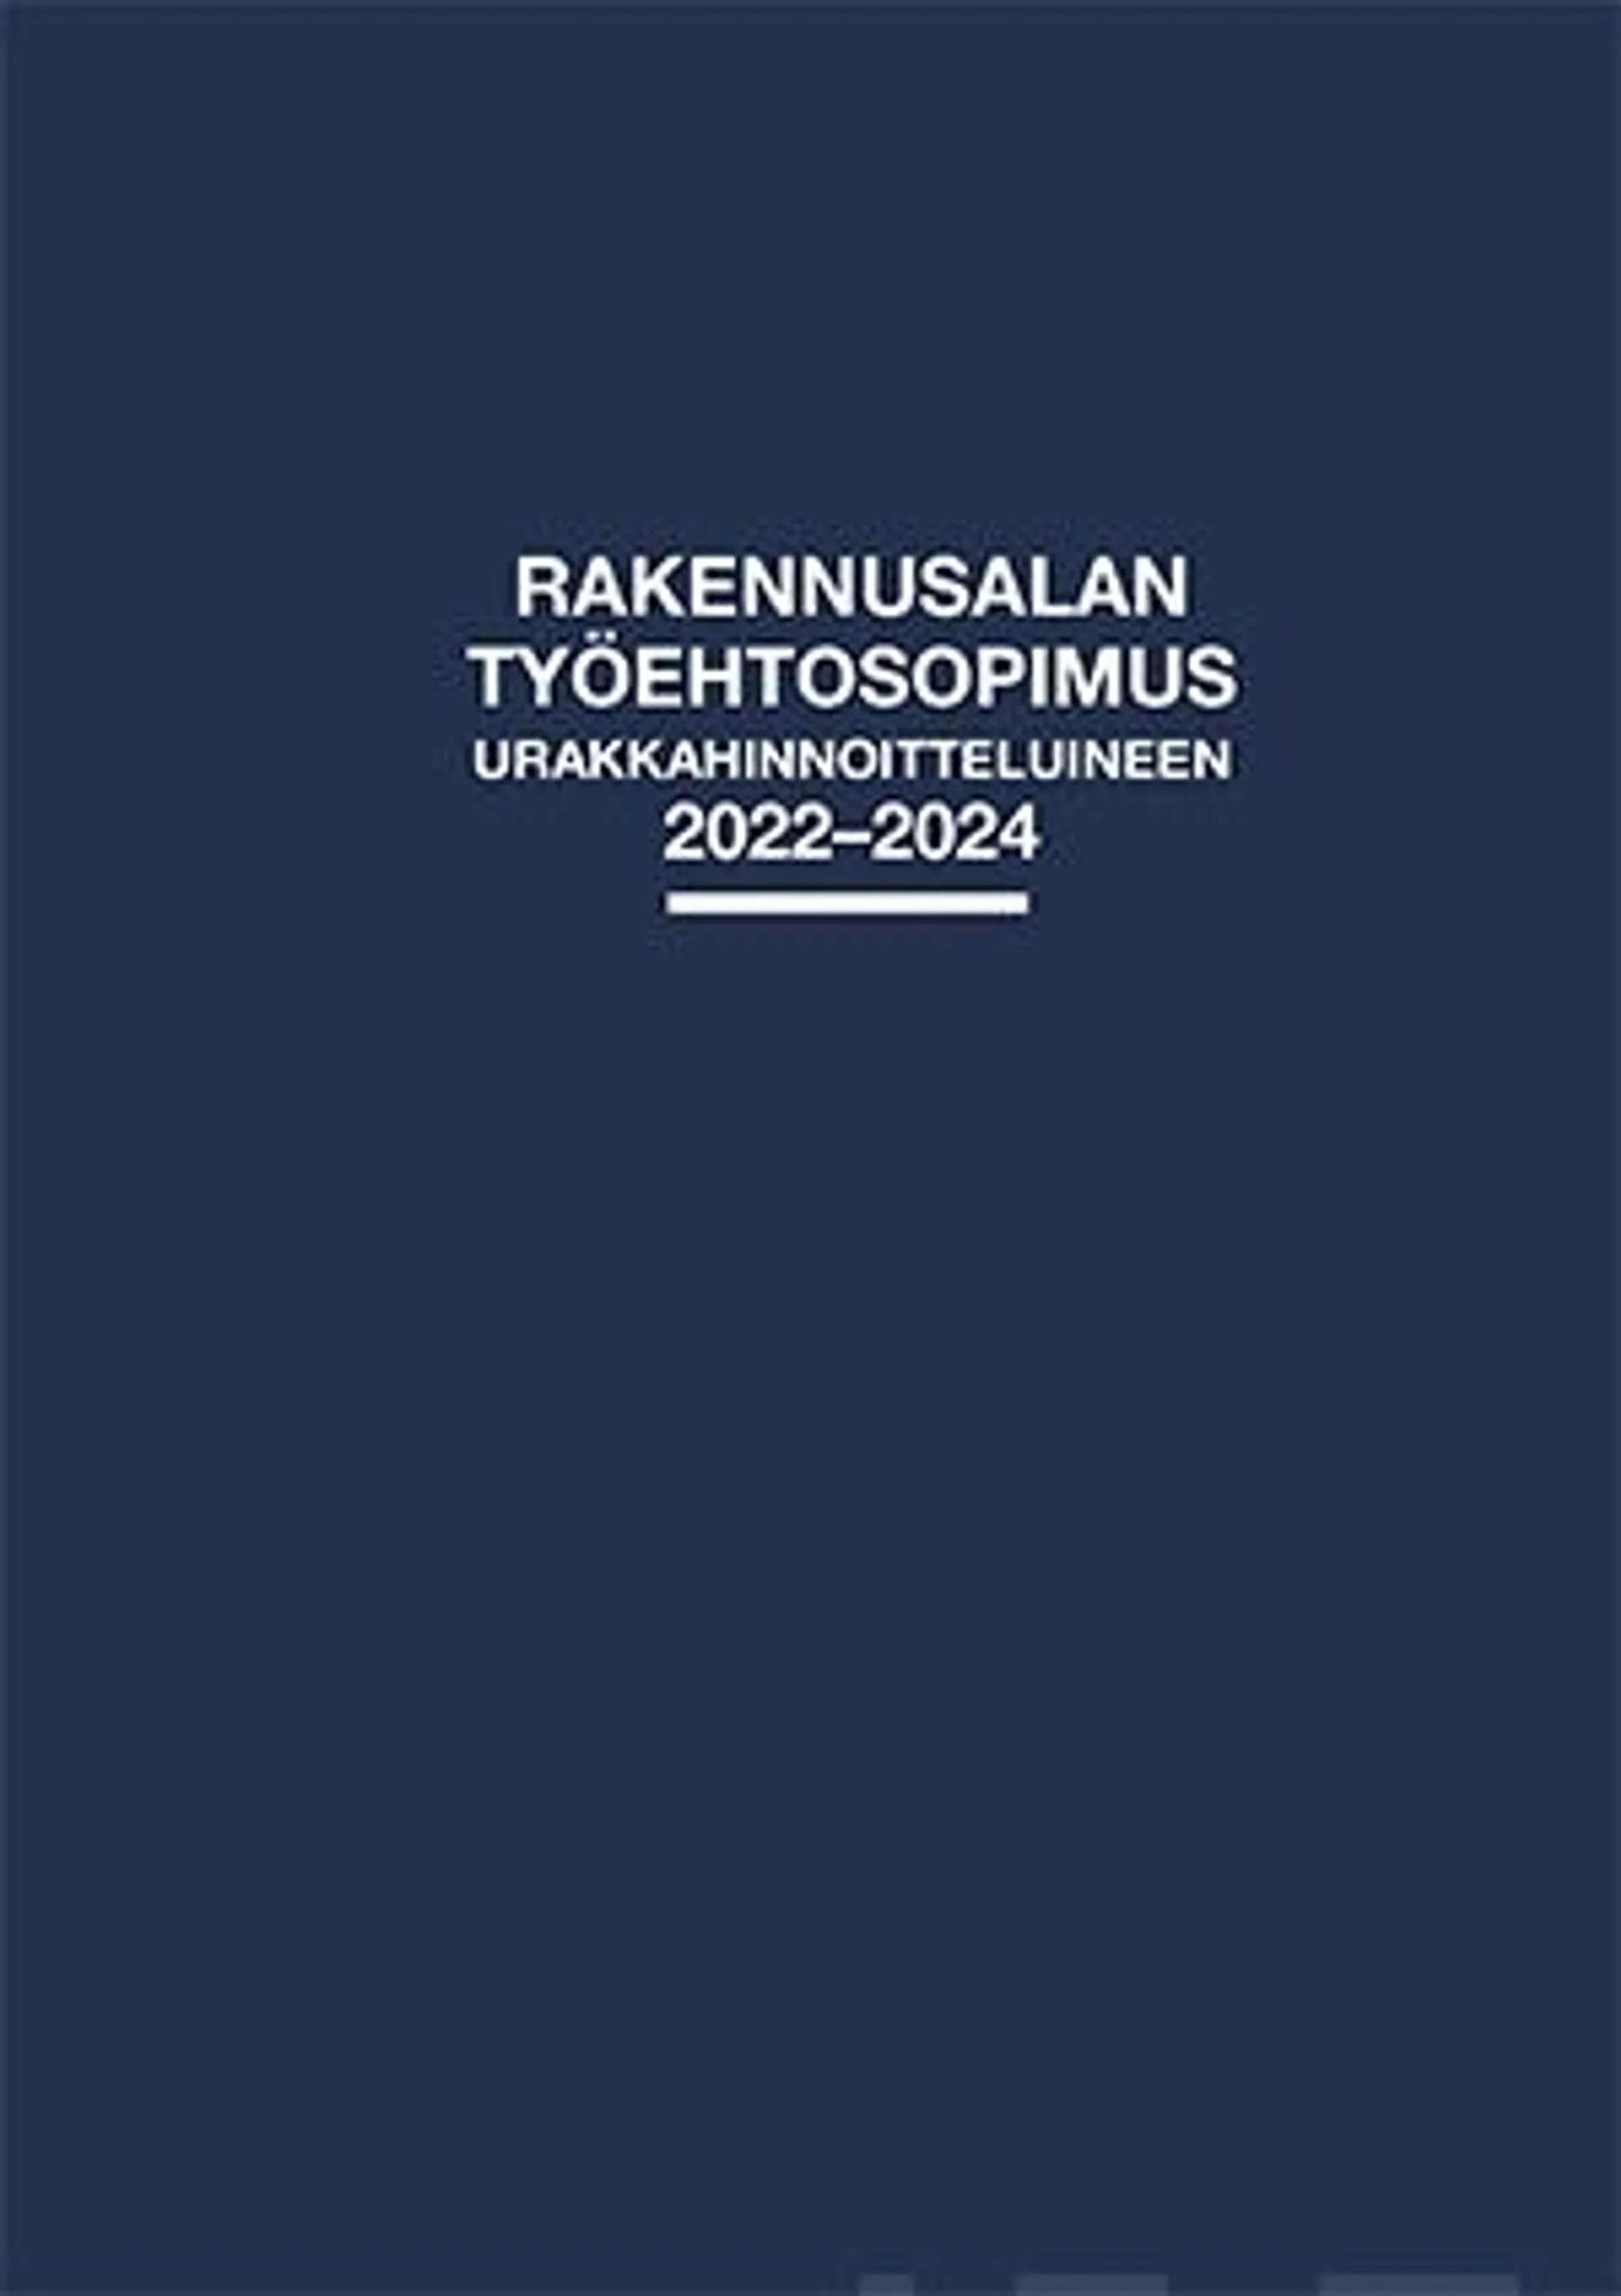 Rakennusalan työehtosopimus urakkahinnoitteluineen - 2022-2024